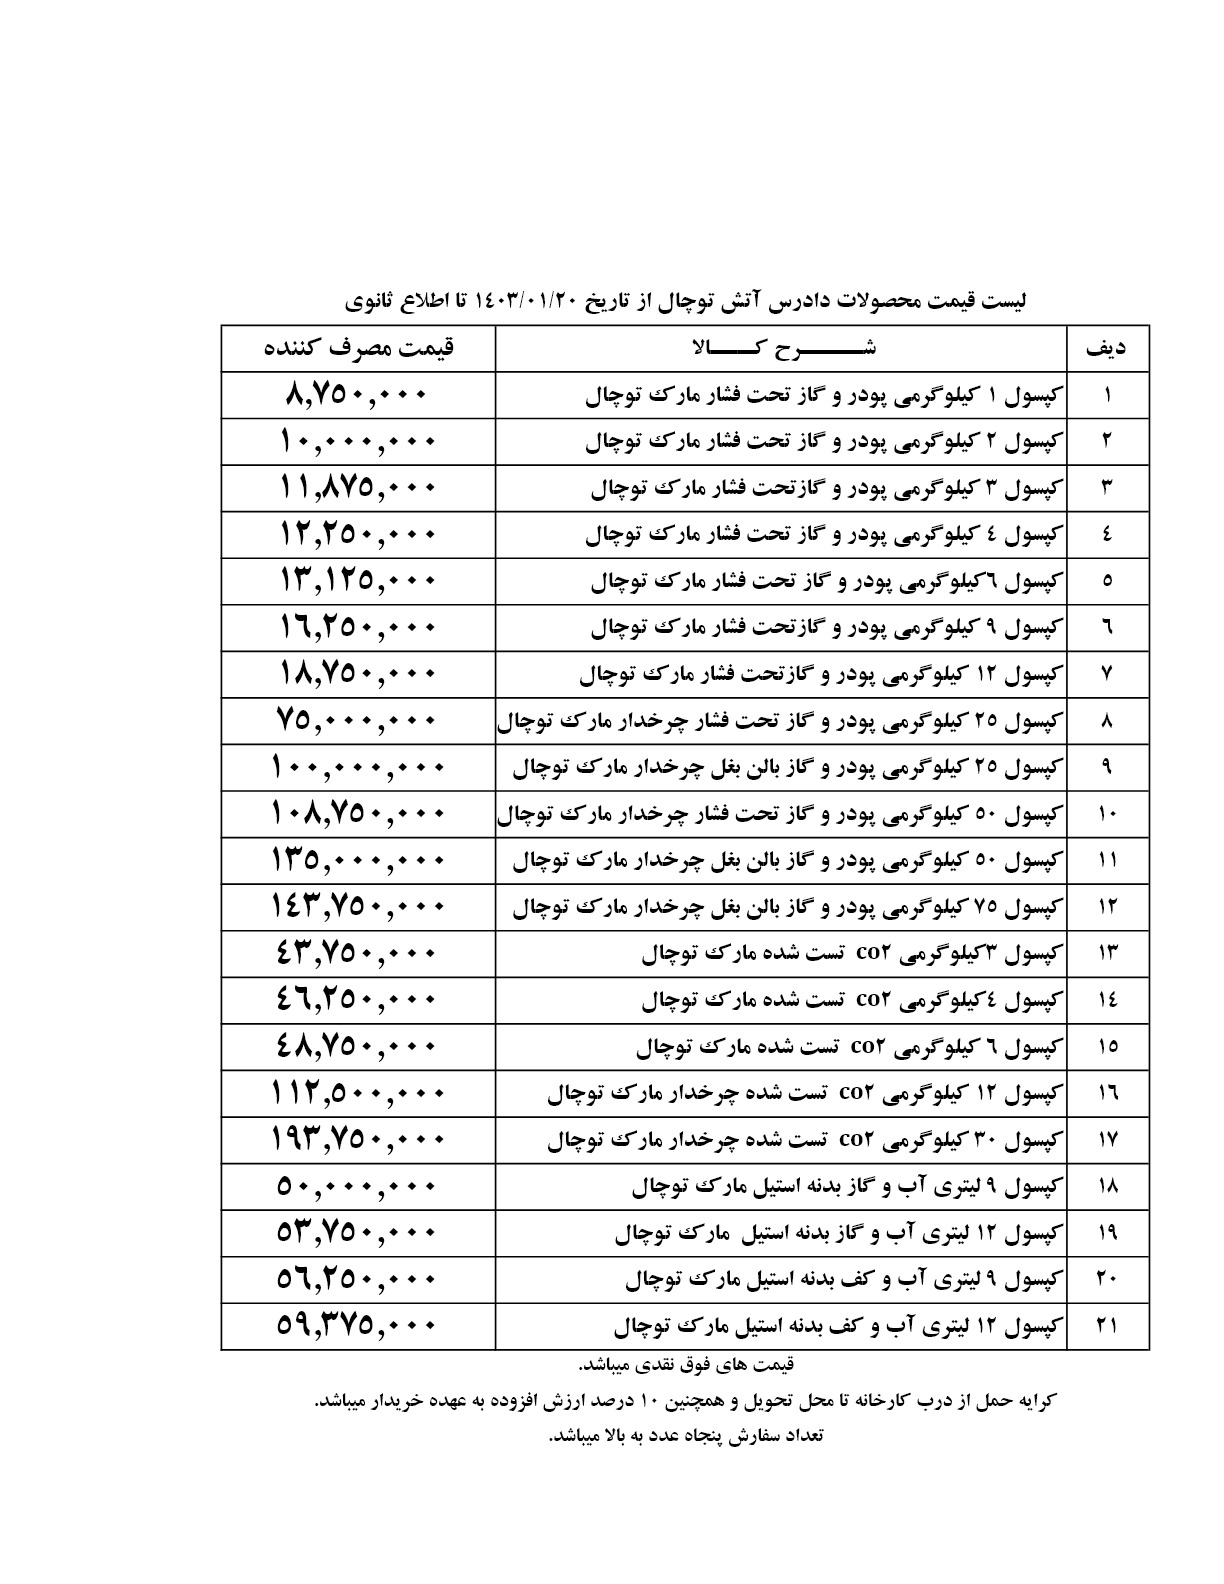 لیست قیمت محصوالت دادرس آتش توچال از تاریخ 1403/01/20 تا اطلاع ثانوی